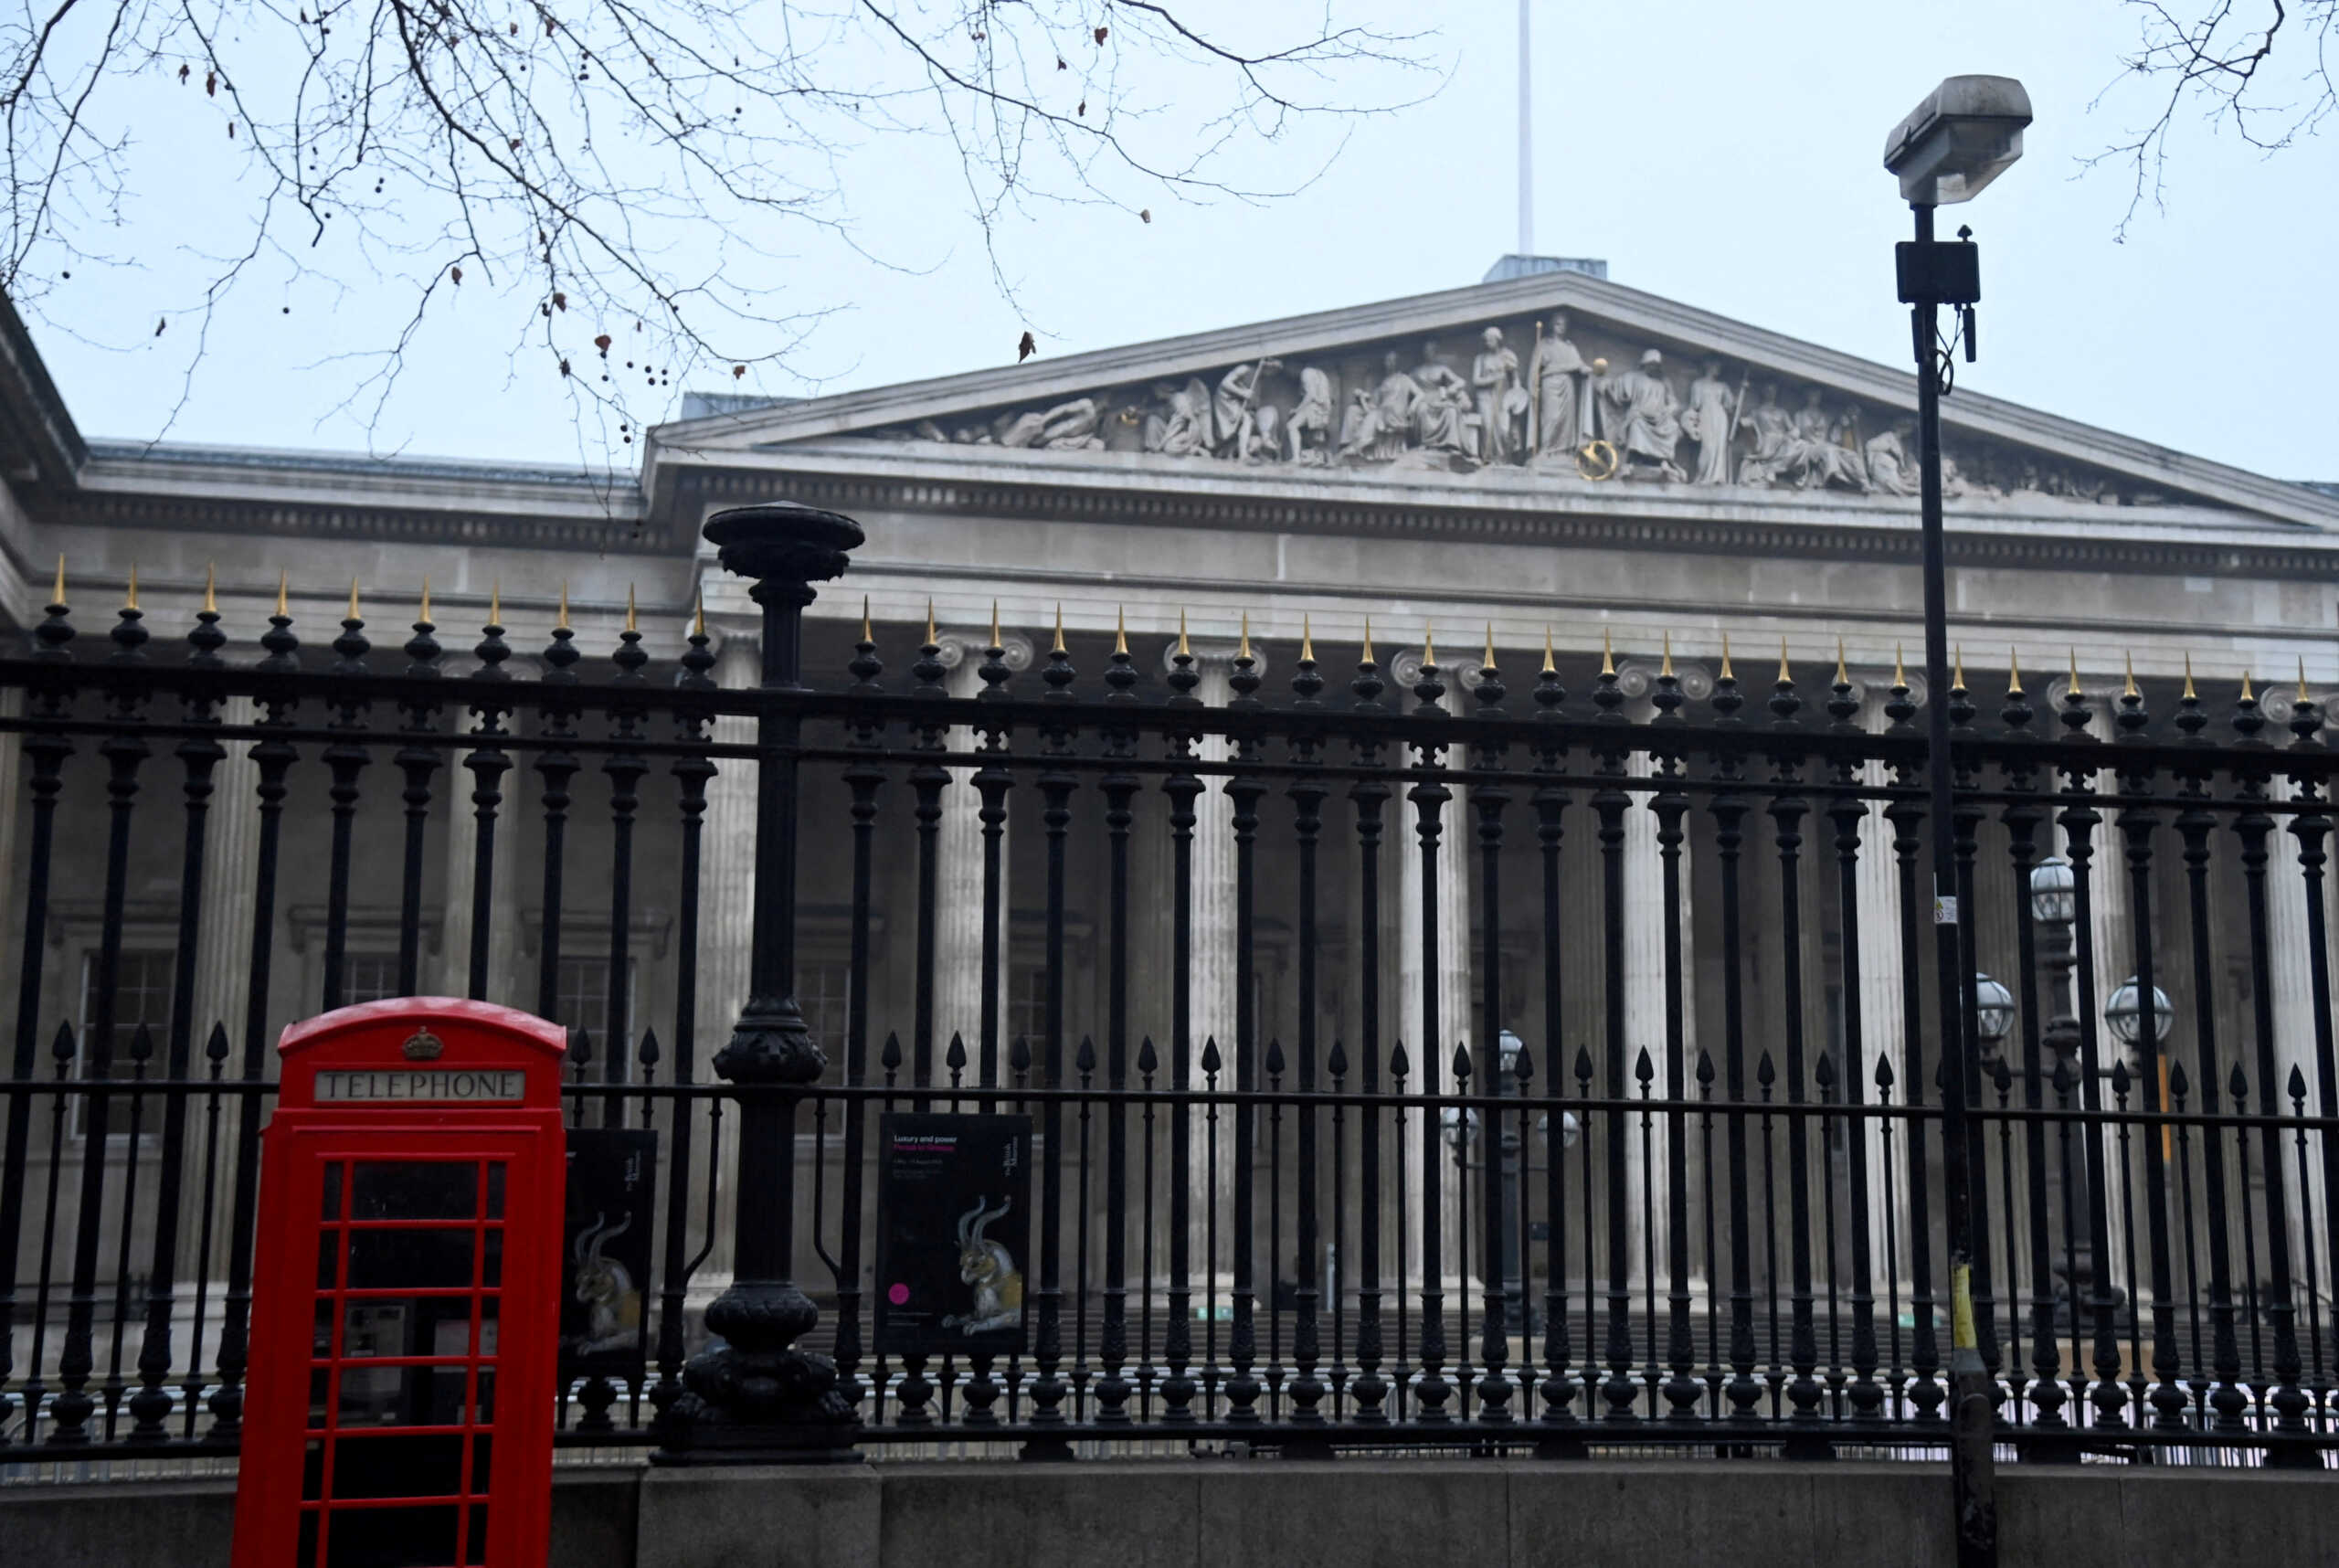 Βρετανικό Μουσείο: Εργαζόμενος του μουσείου με ειδικότητα στον αρχαιοελληνικό πολιτισμό ο κατηγορούμενος για την κλοπή